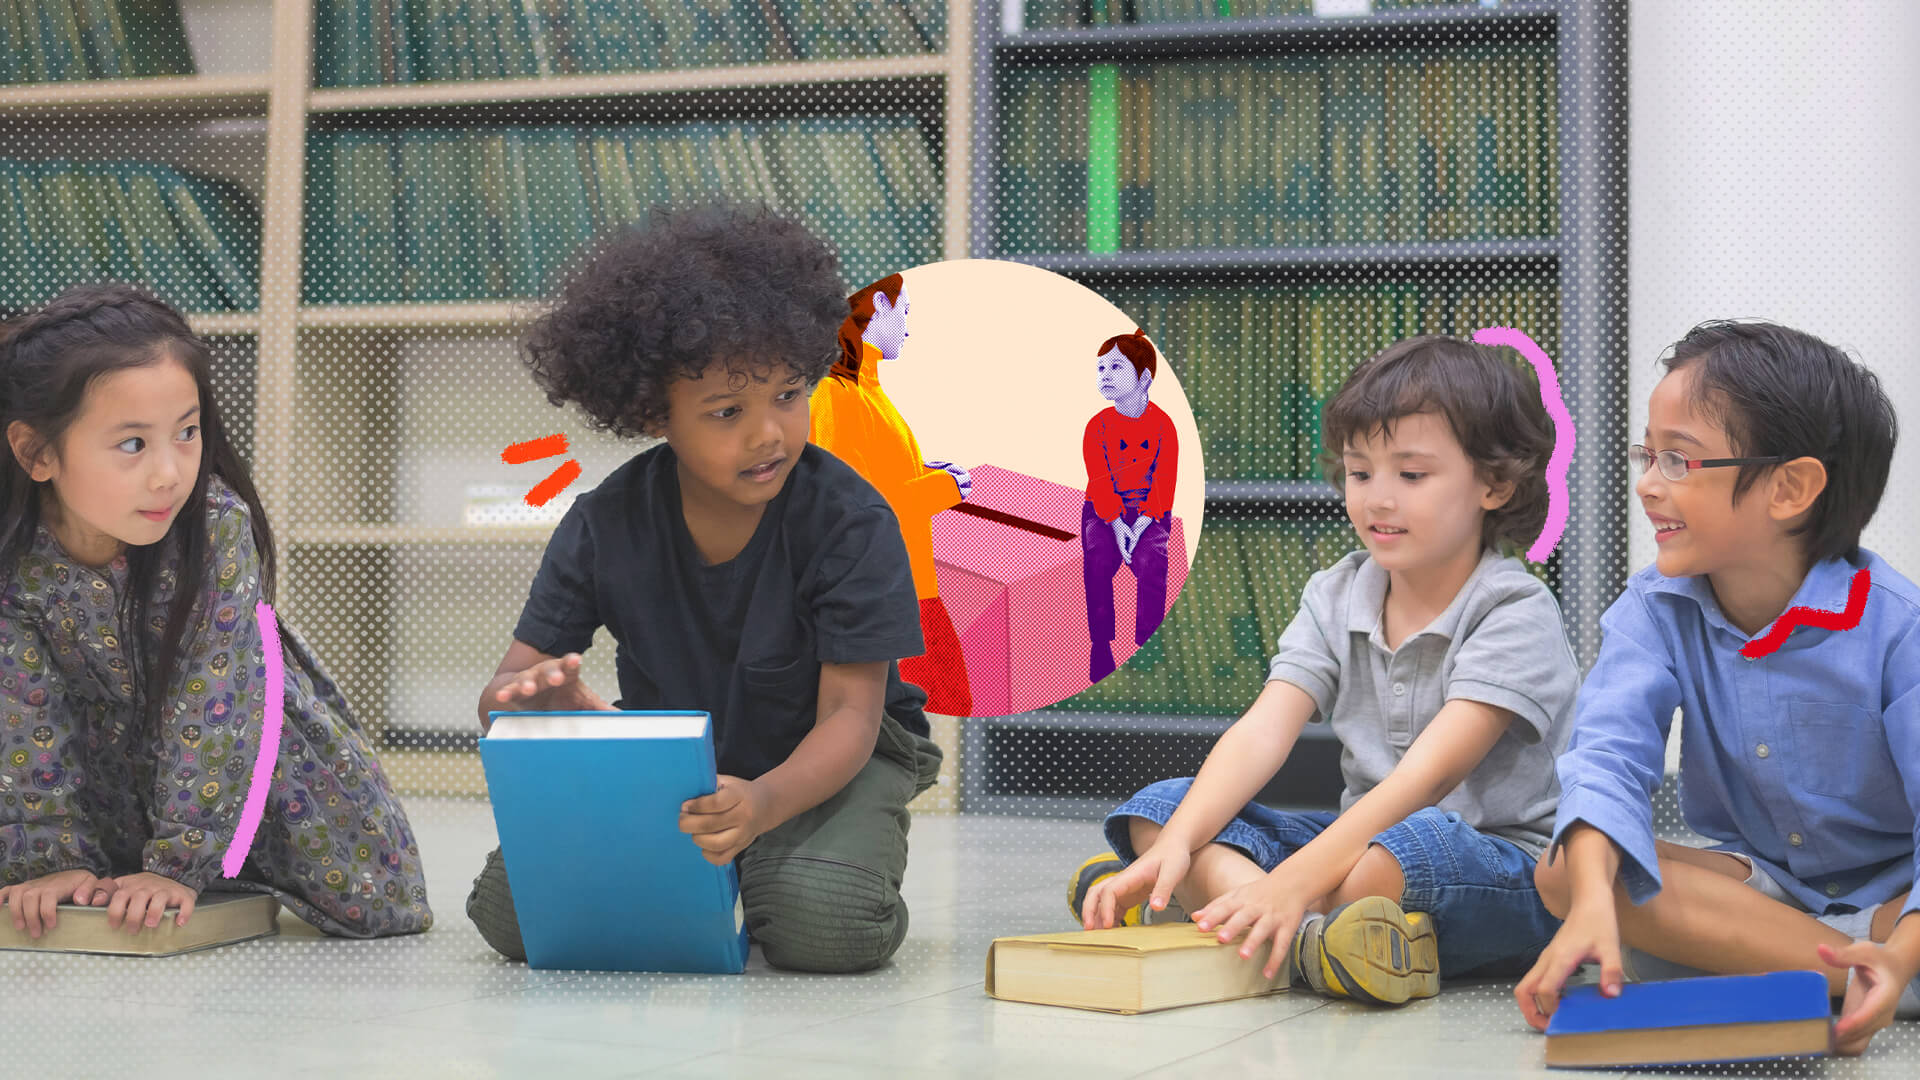 Como falar de política com as crianças: na imagem, um grupo multiétnico de crianças está em uma biblioteca. Todos seguram livros. A imagem possui intervenções de rabiscos coloridos.